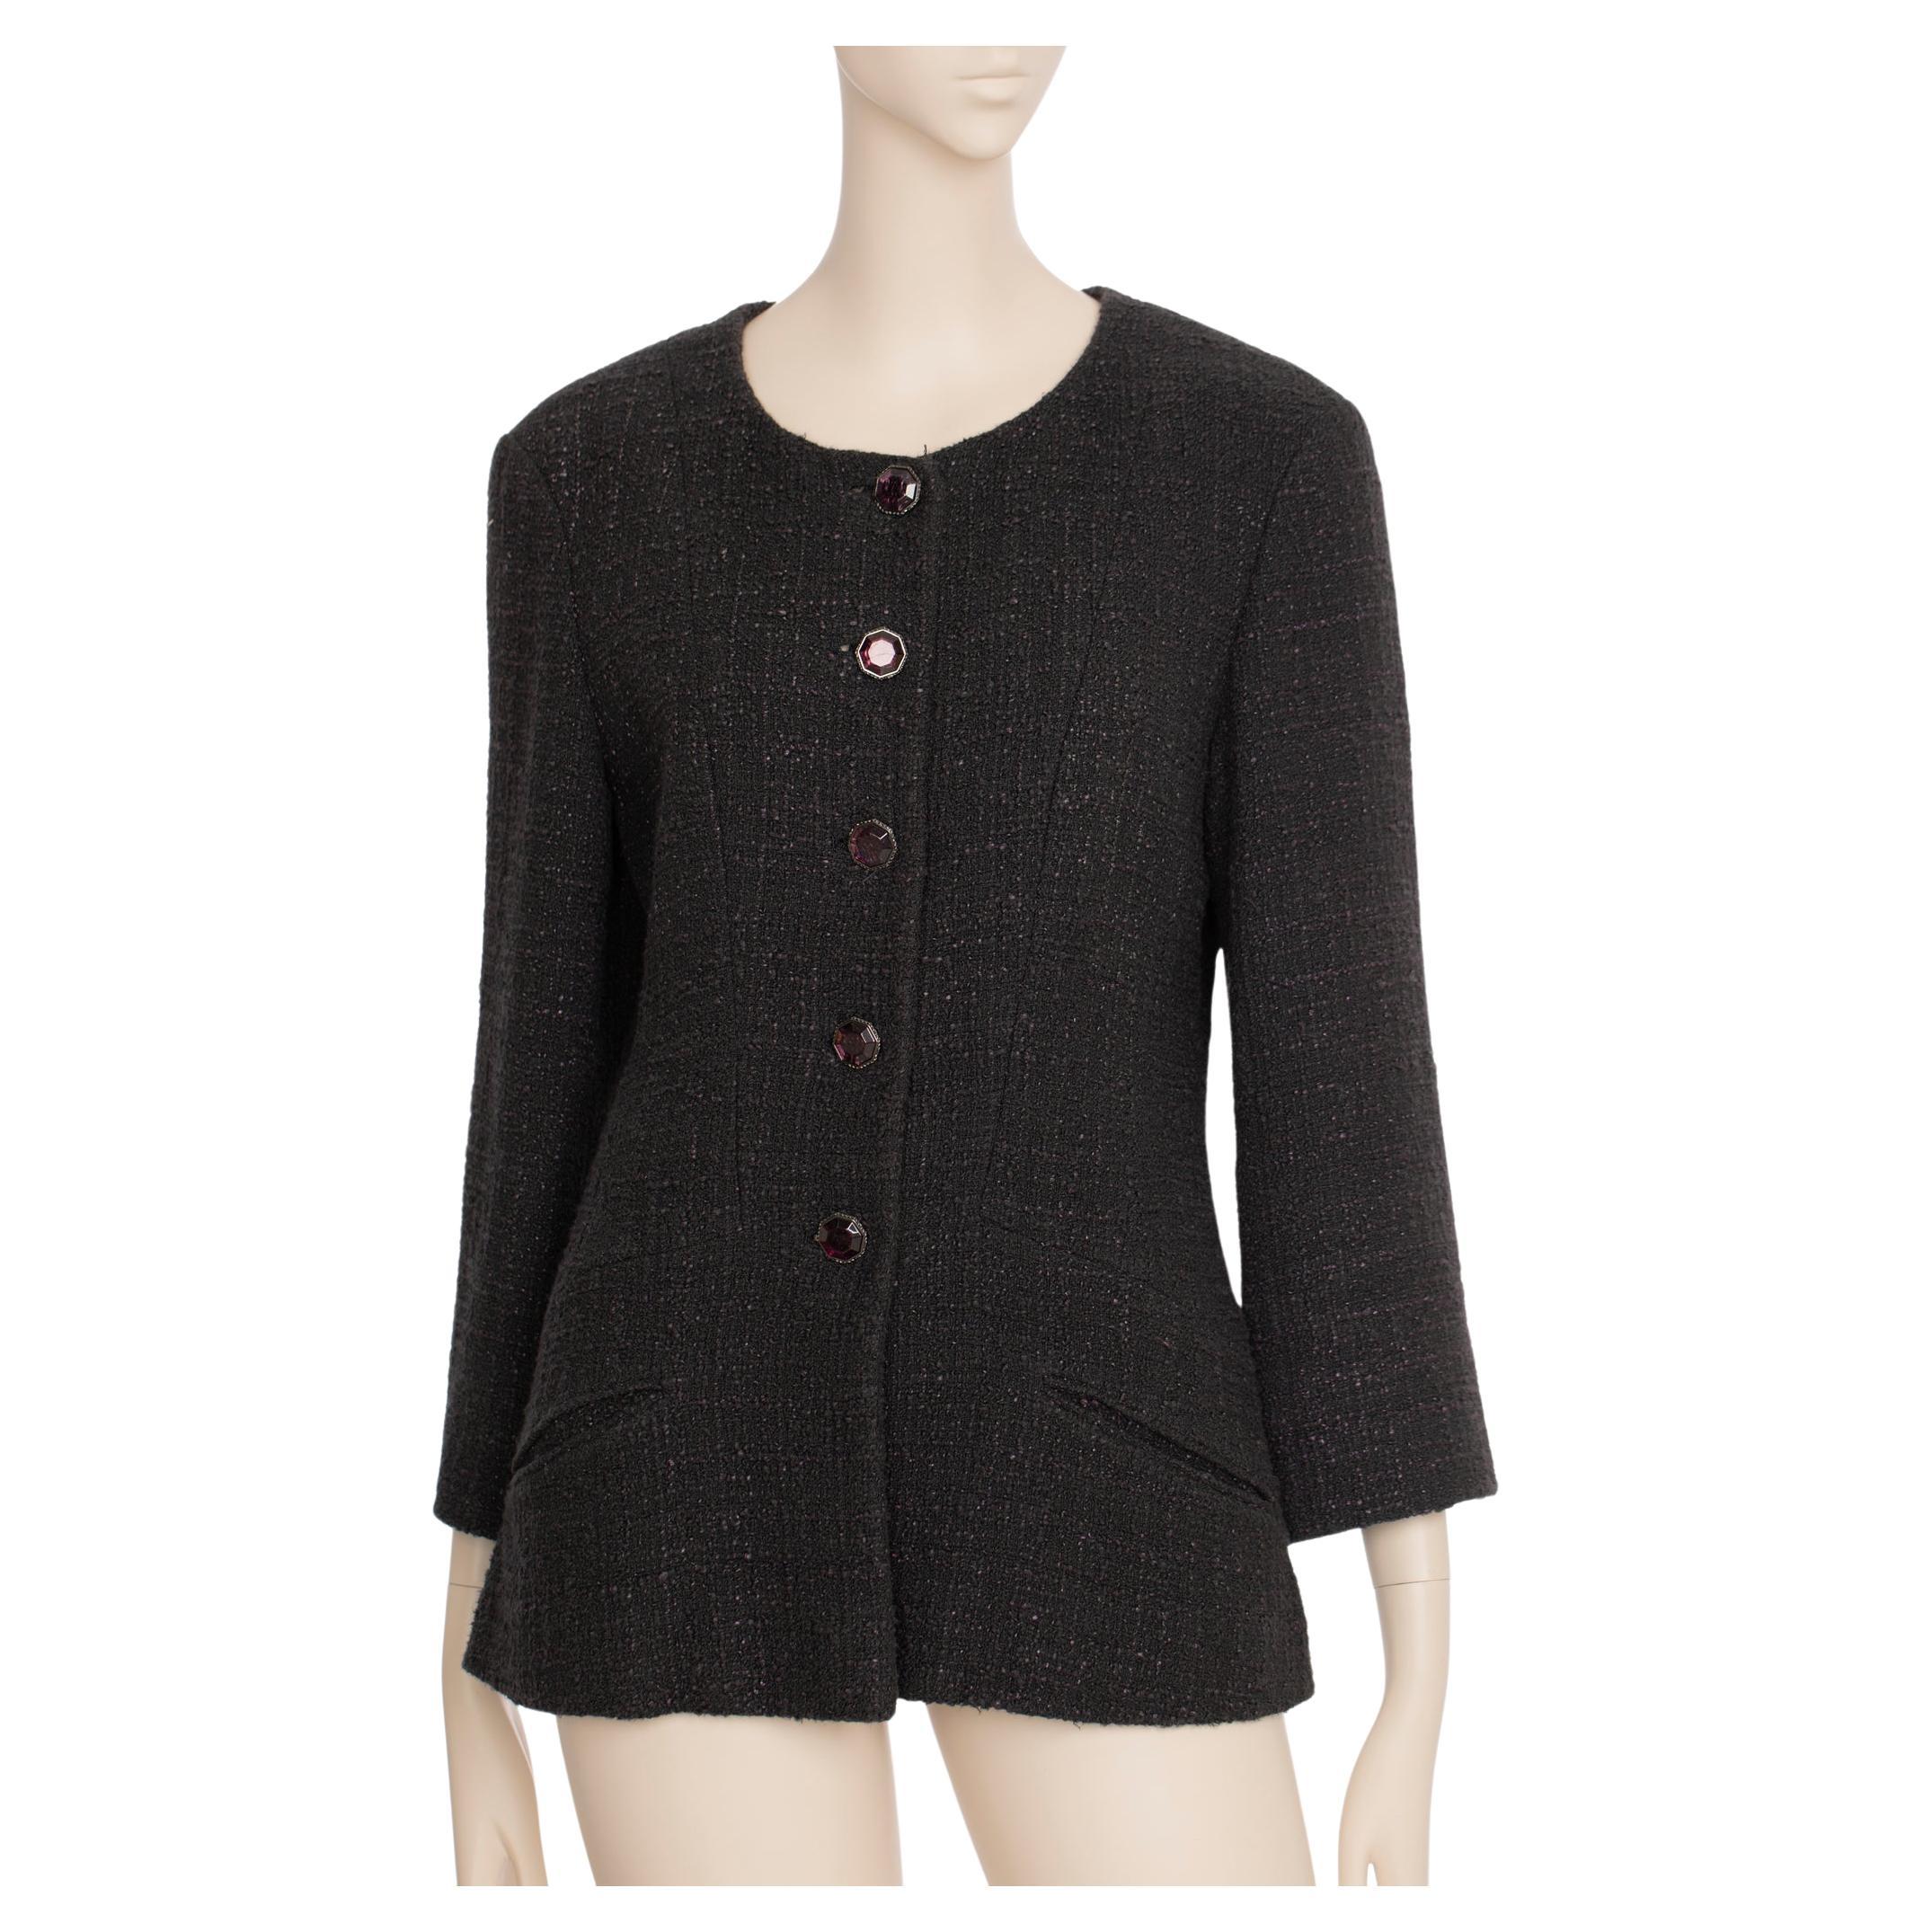 Chanel Tweed-Jacke mit mehreren Knöpfen und Rundhalsausschnitt 40 FR